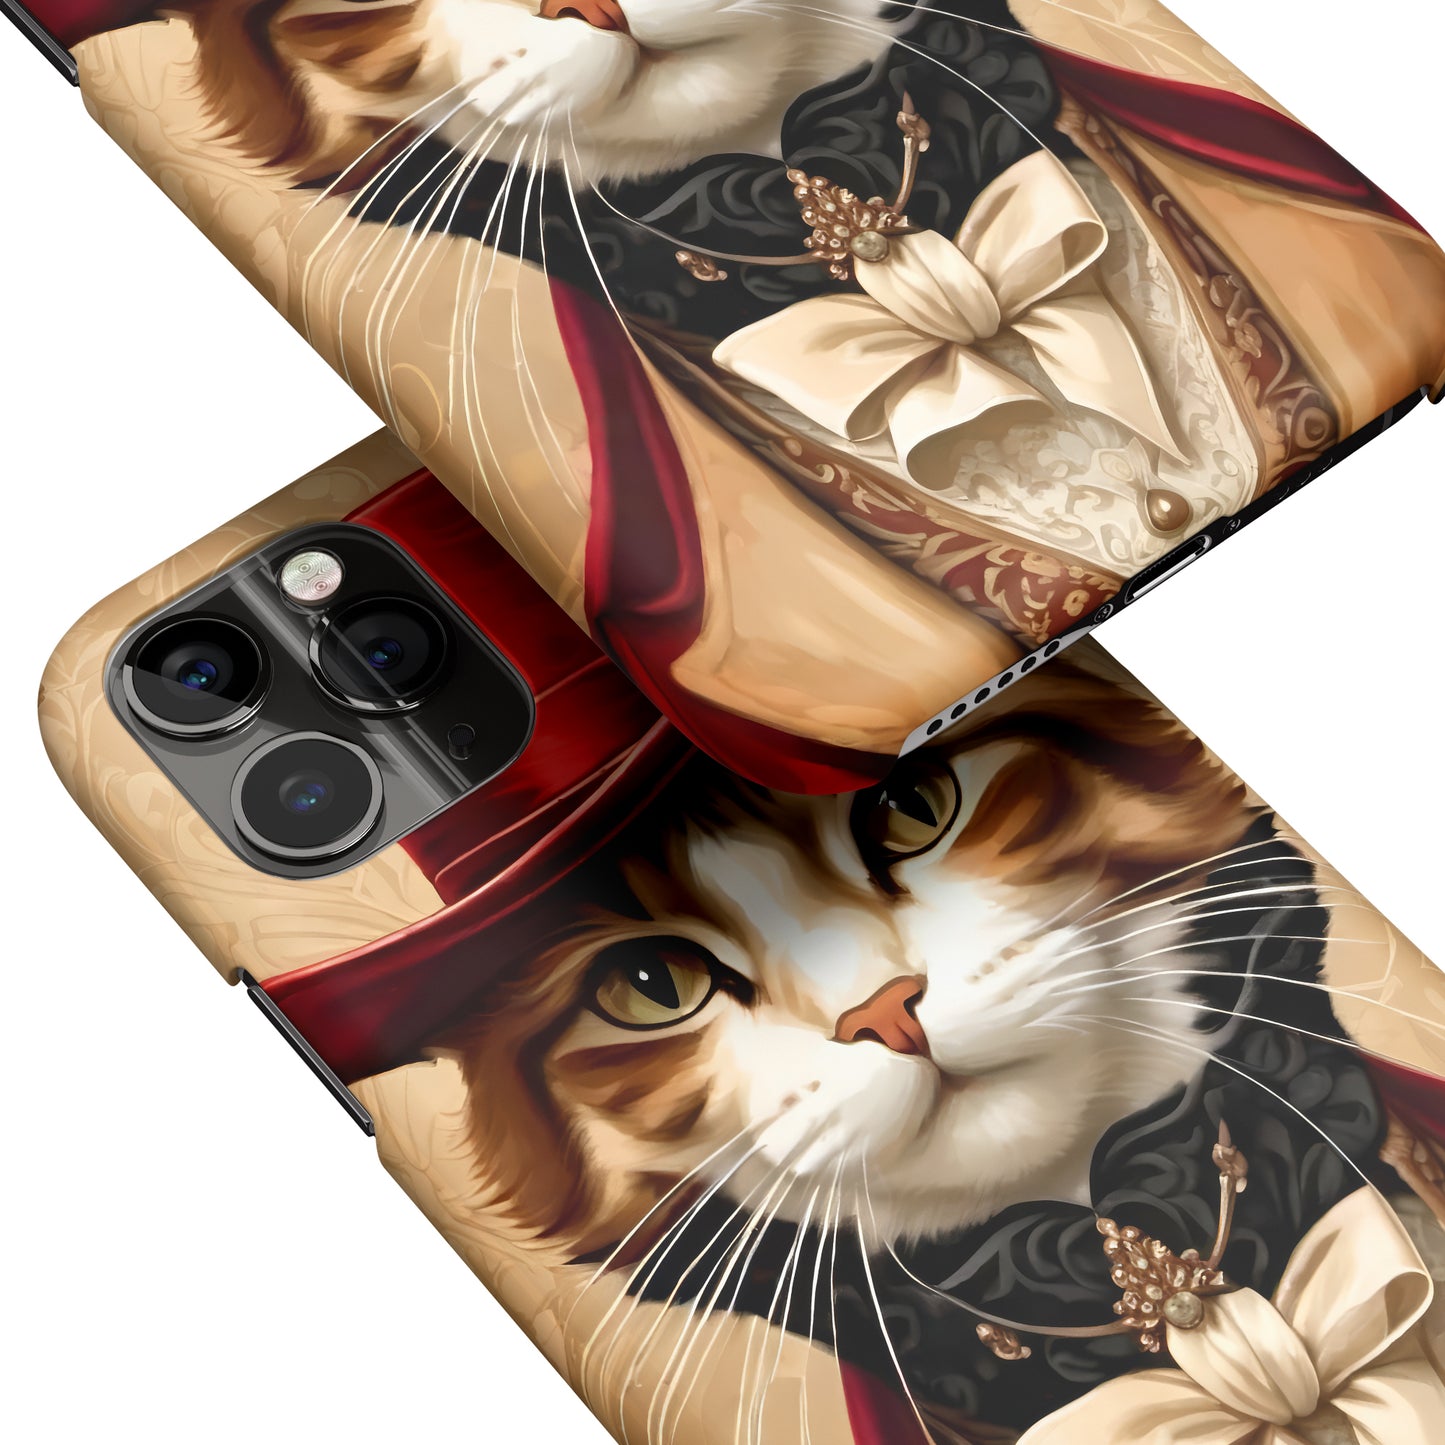 Elegant Victorian Cat iPhone Case